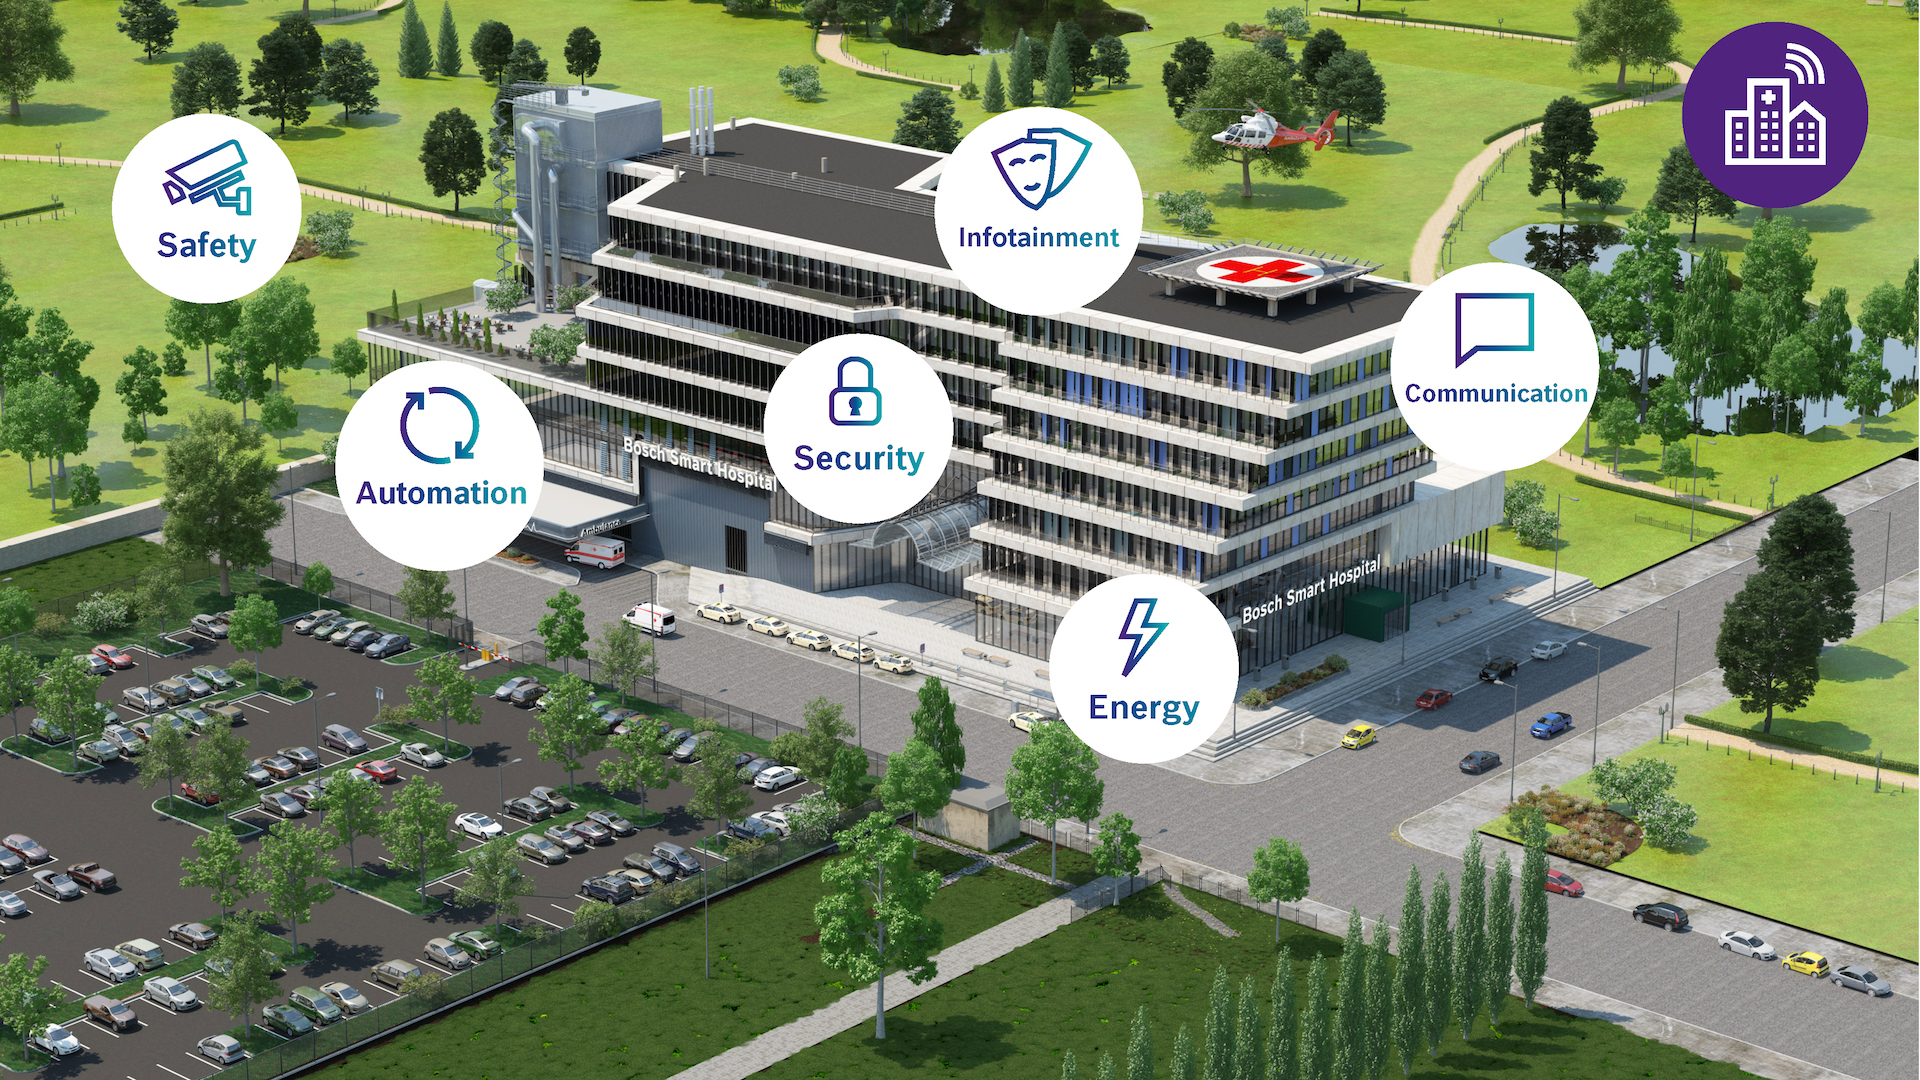 “Tutti pronti in sala operatoria: elicottero in arrivo!” Ospedali intelligenti grazie a Bosch